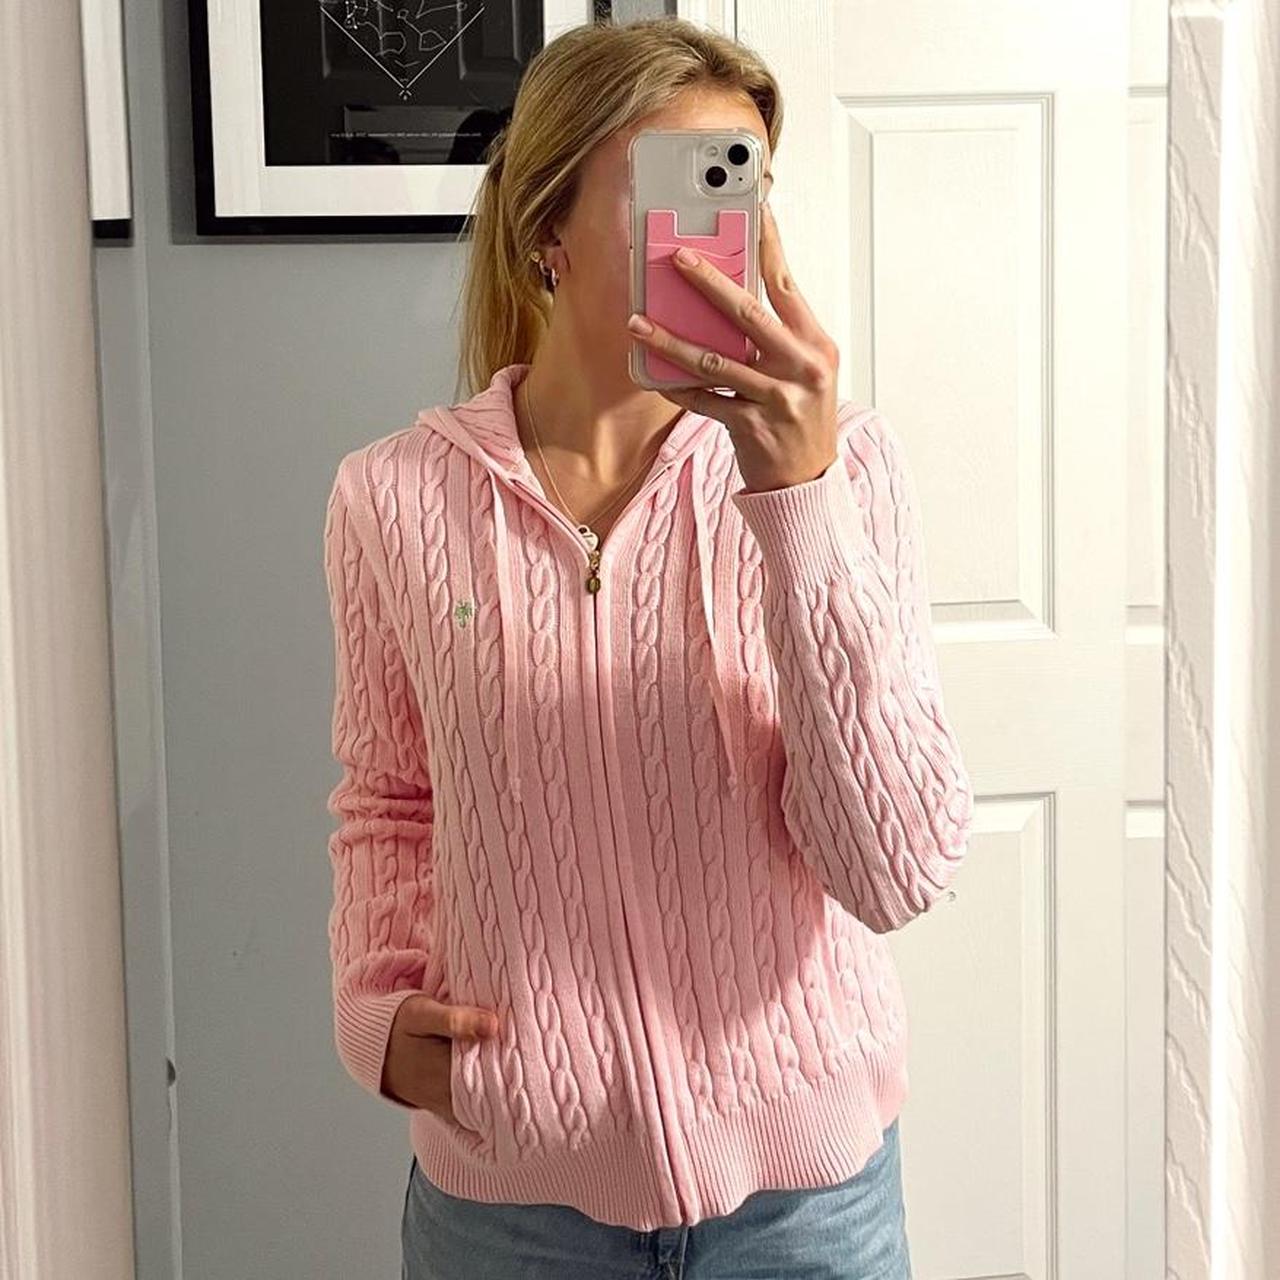 Lilly Pulitzer Women's Pink Sweatshirt